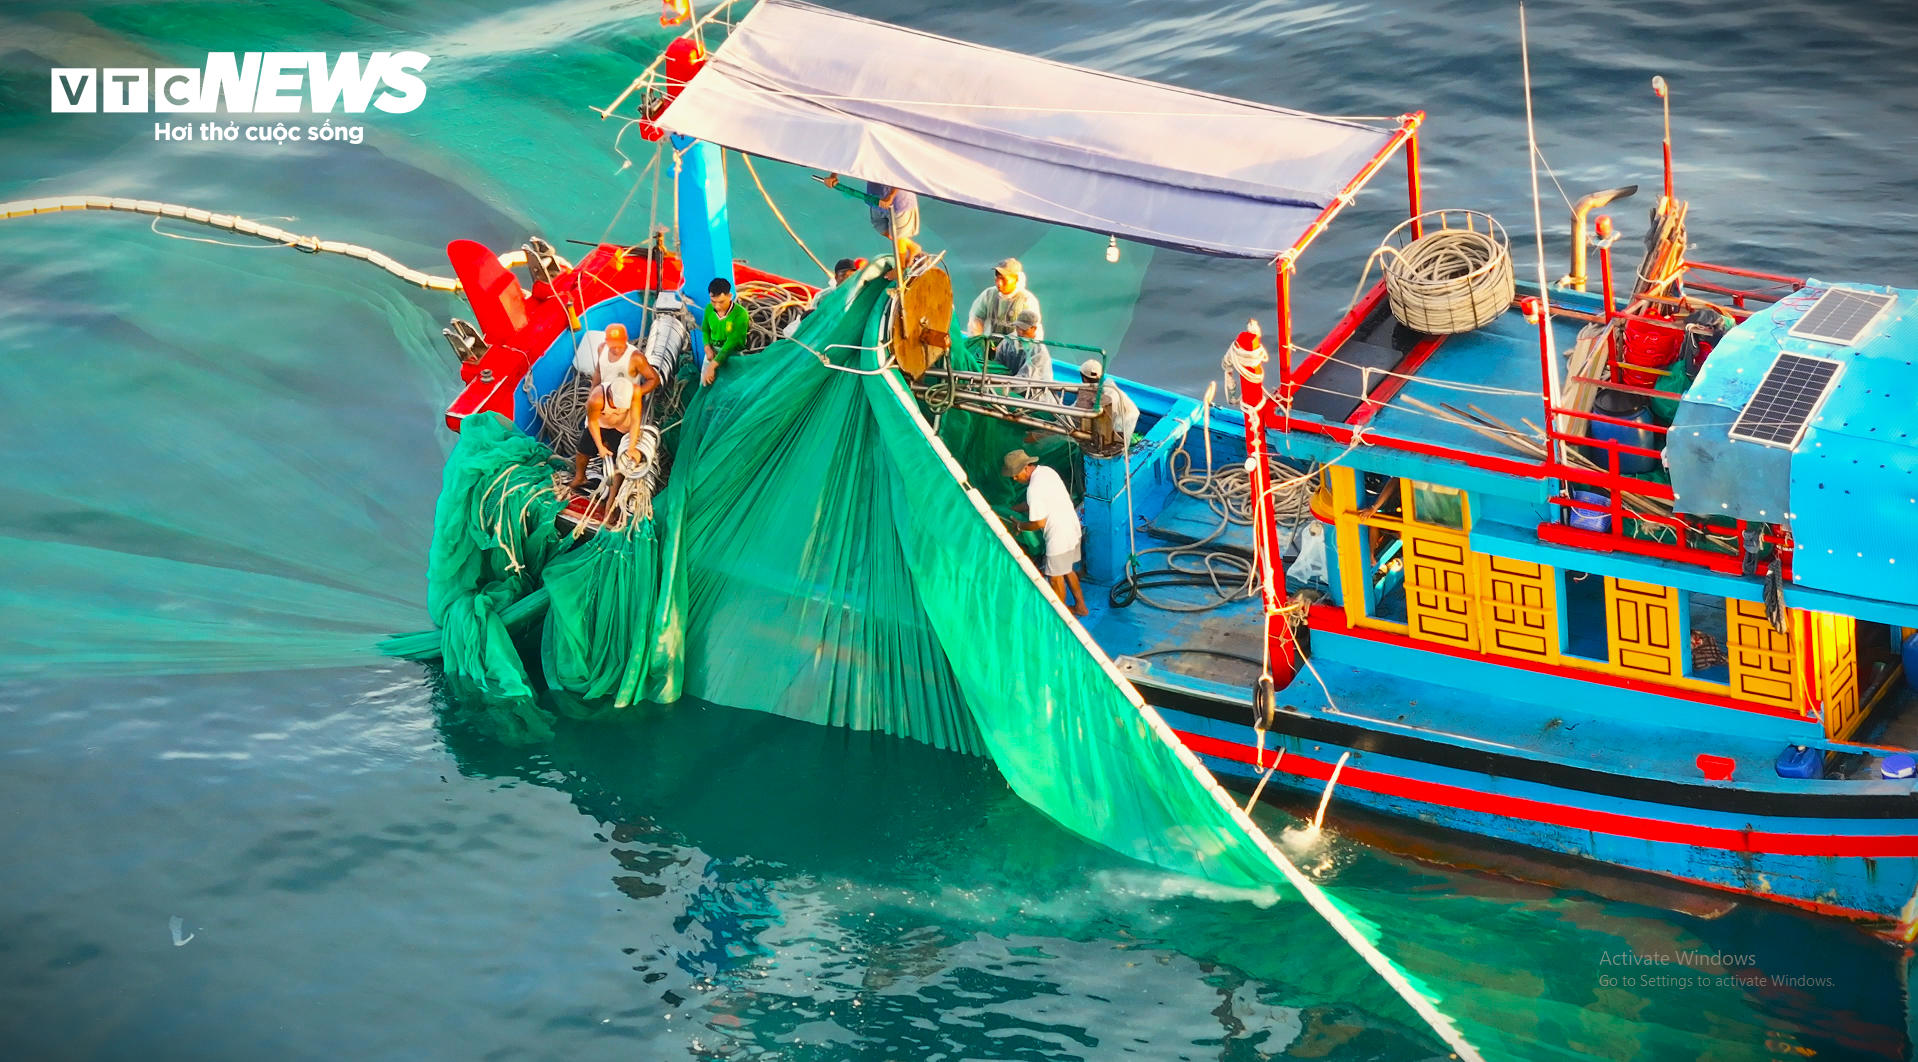 Mê mẩn mẻ lưới vẽ ‘trái tim của biển’ ở đảo Hòn Yến, Phú Yên - 7